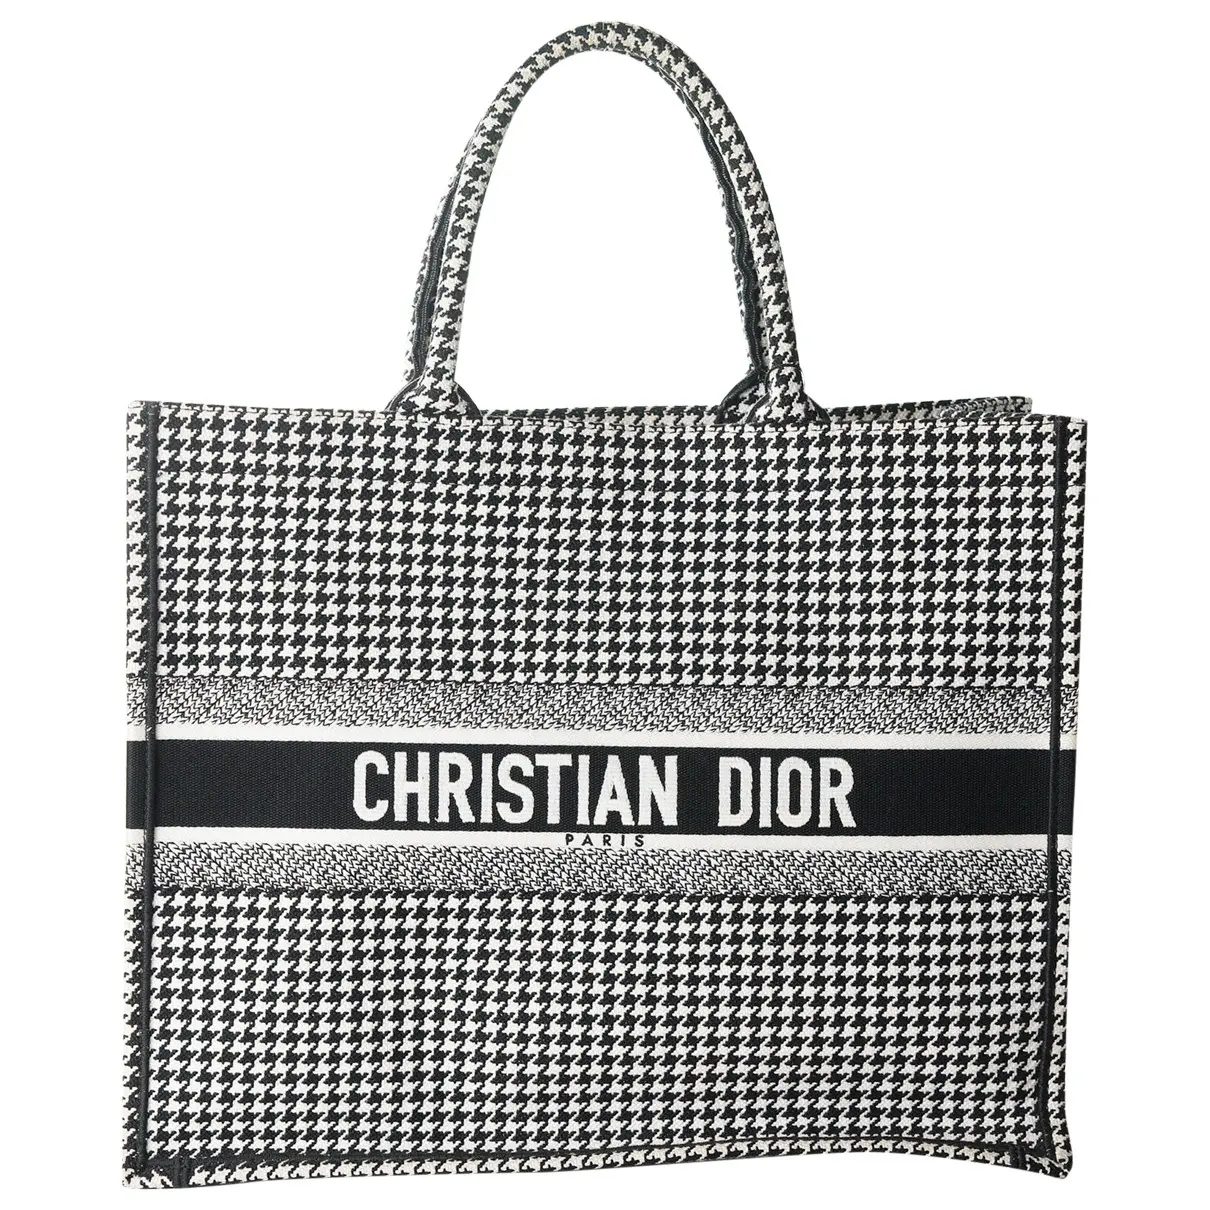 Book Tote cloth tote Christian Dior